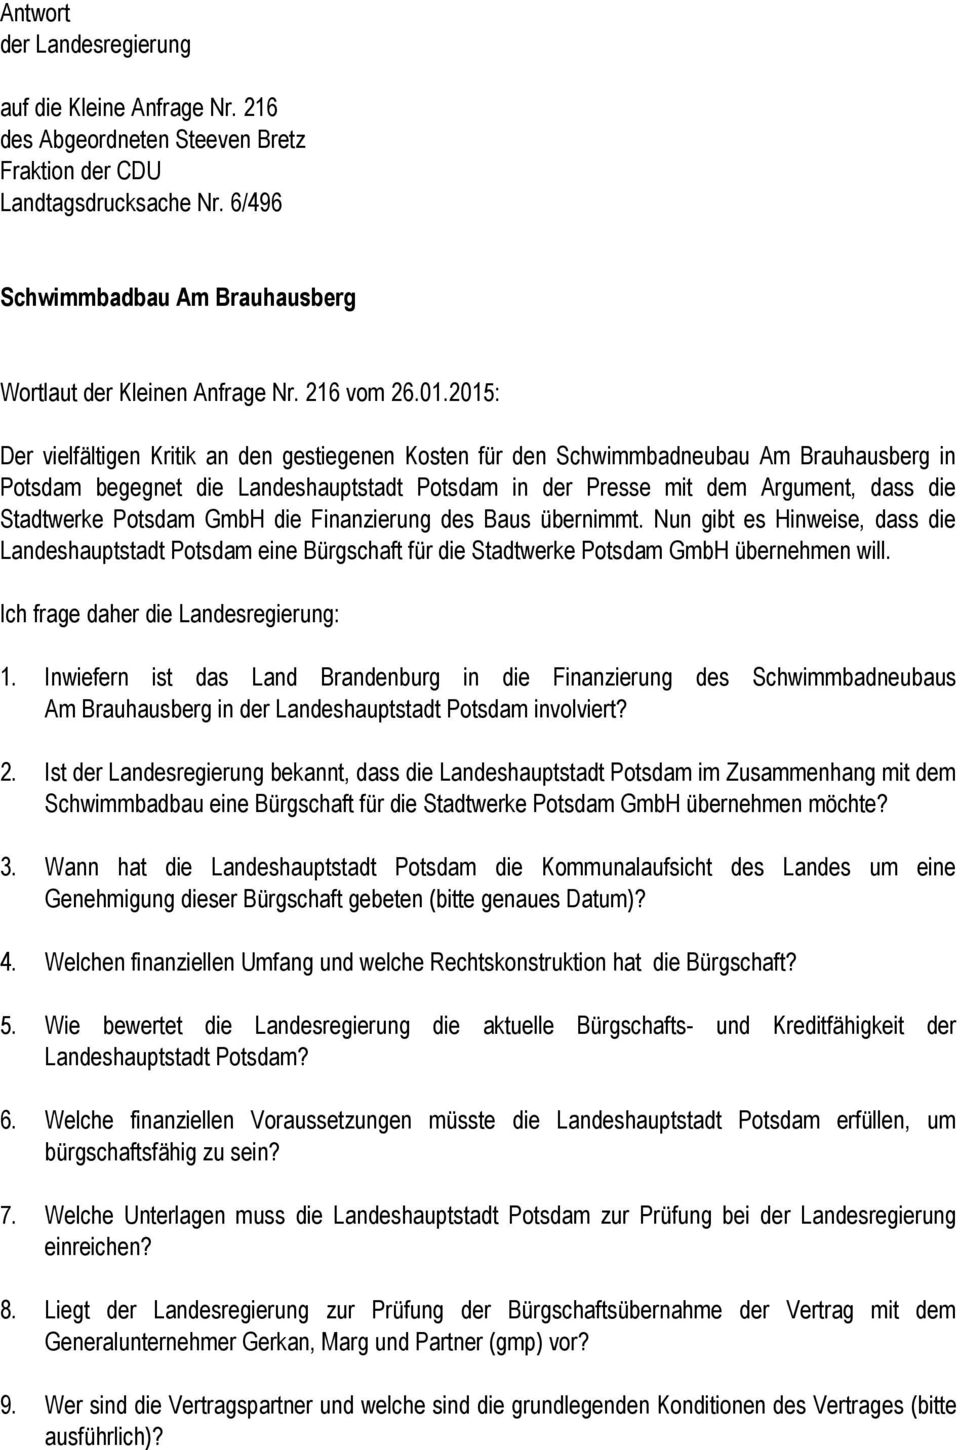 2015: Der vielfältigen Kritik an den gestiegenen Kosten für den Schwimmbadneubau Am Brauhausberg in Potsdam begegnet die Landeshauptstadt Potsdam in der Presse mit dem Argument, dass die Stadtwerke